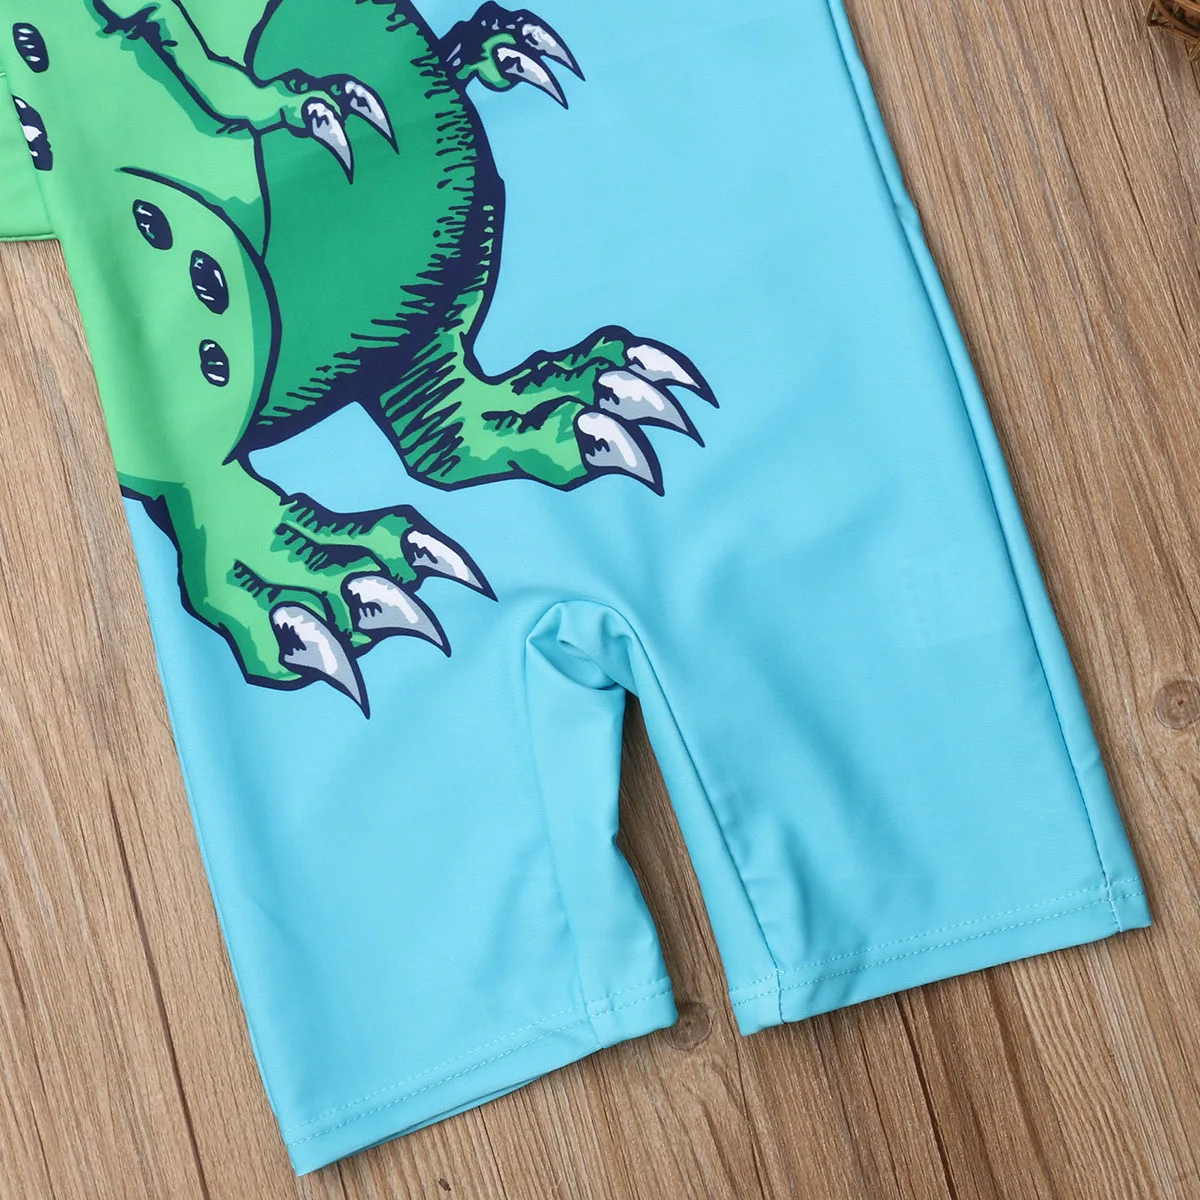 Детская одежда для плавания с рисунком динозавра и сыпи, Солнцезащитный купальник для маленьких мальчиков, костюм, купальный костюм+ шапочка